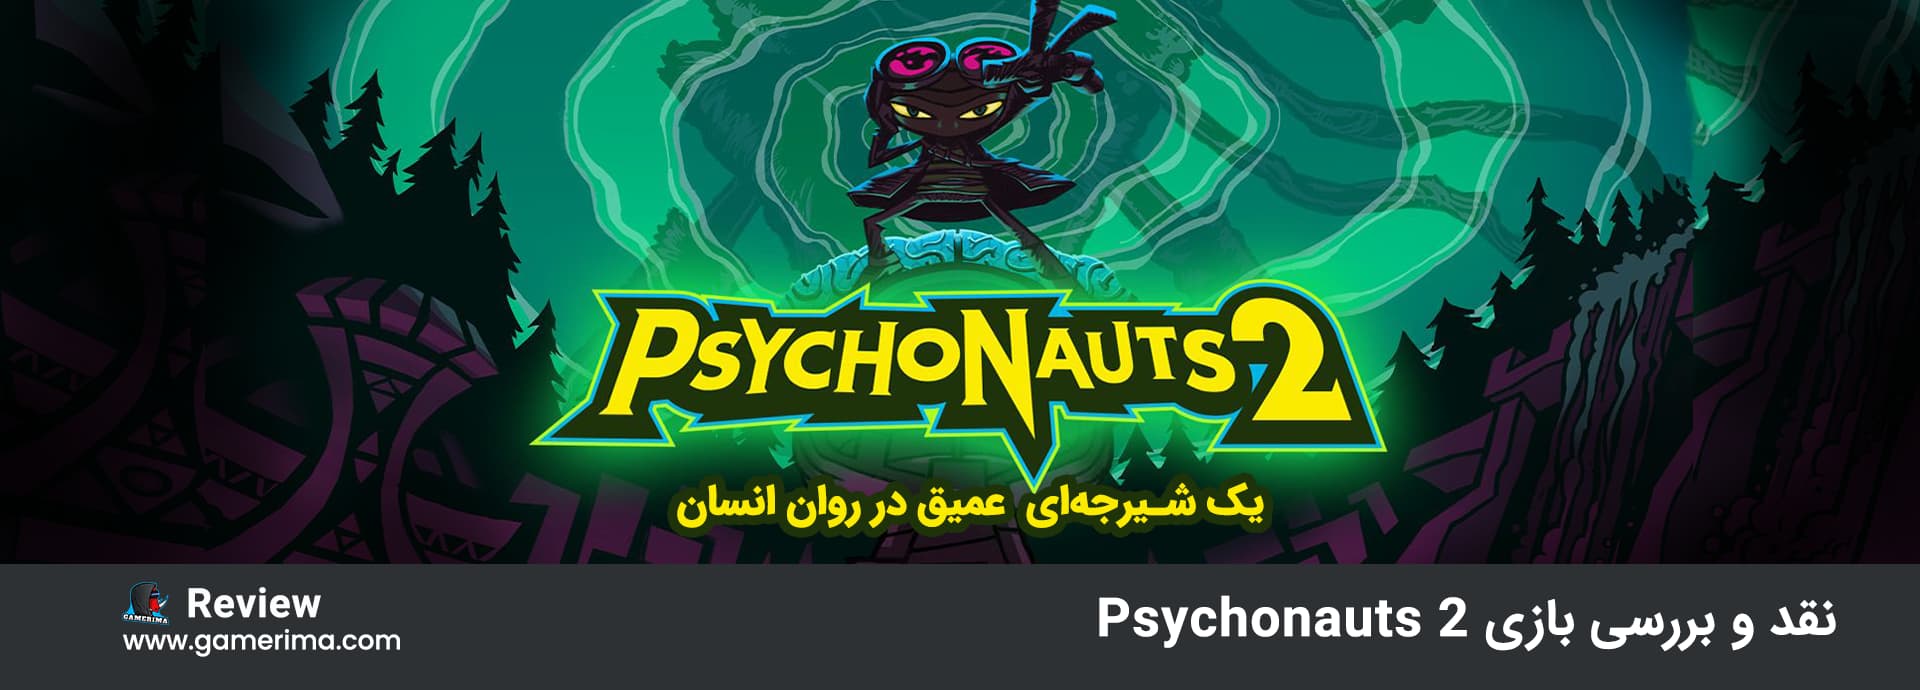 نقد و بررسی بازی Psychonauts 2 شیرجه ای عمیق در روان انسان